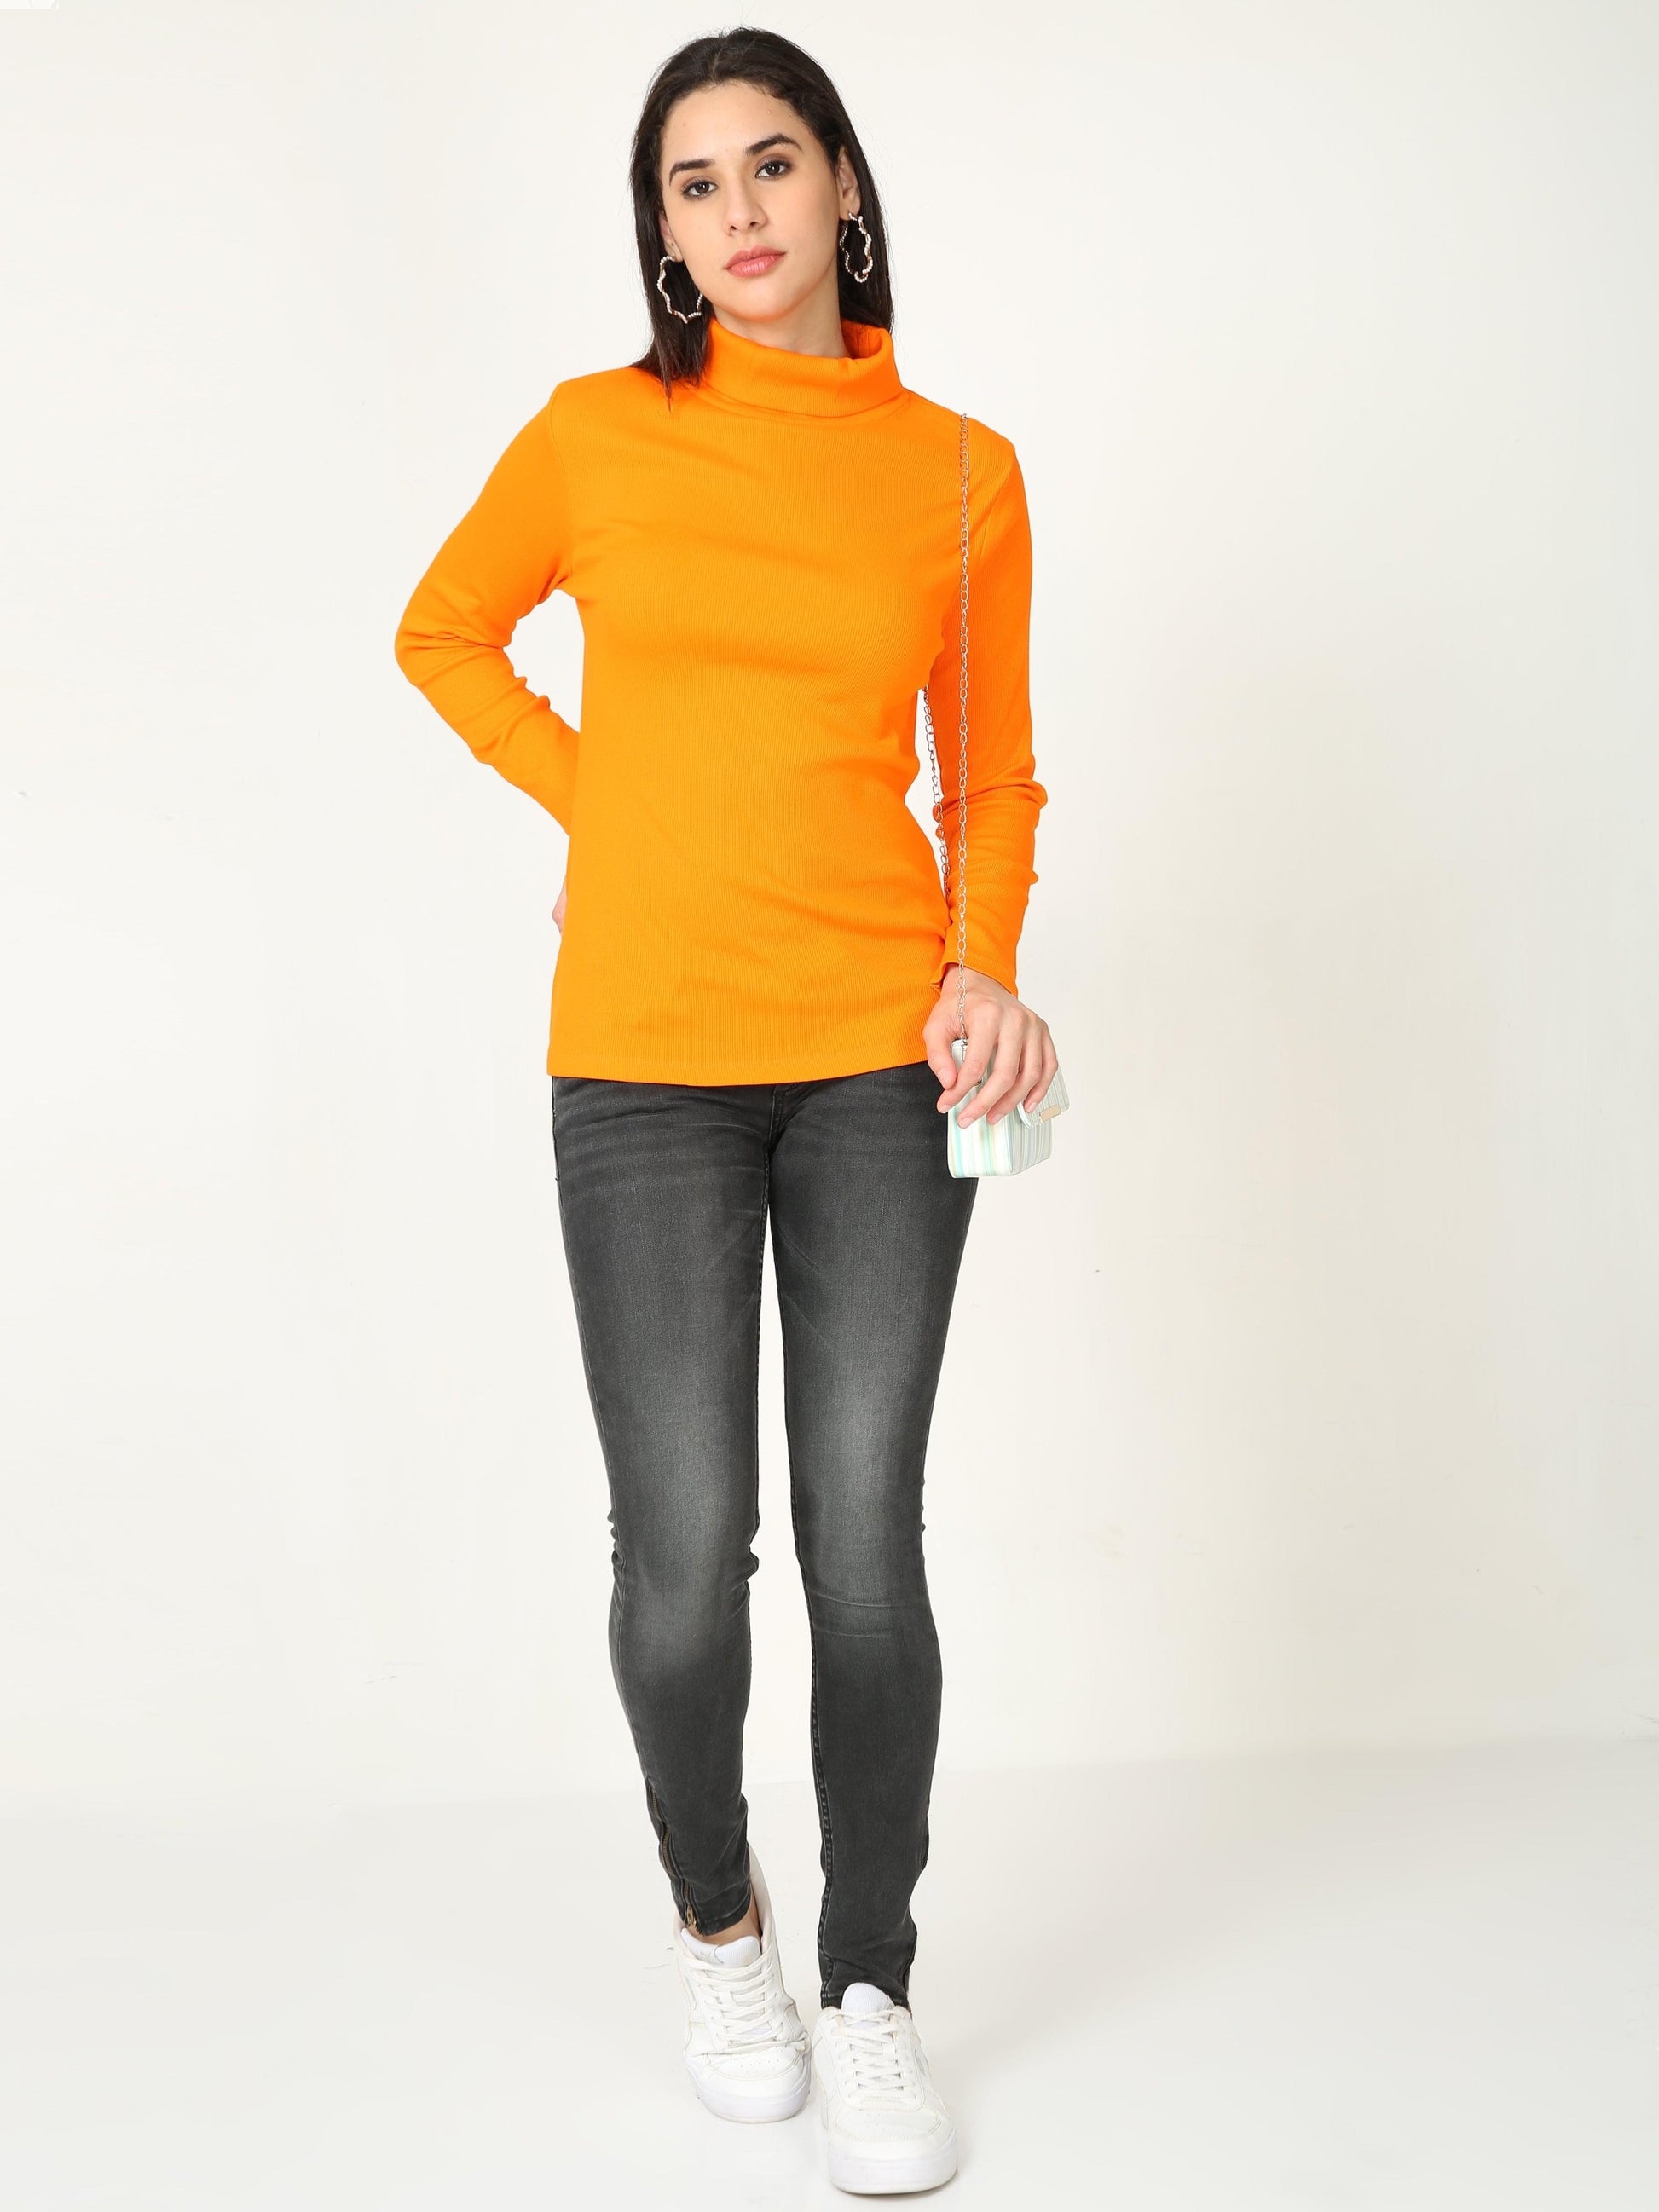 High Neck Full Sleeve Women's T-Shirt - Orange